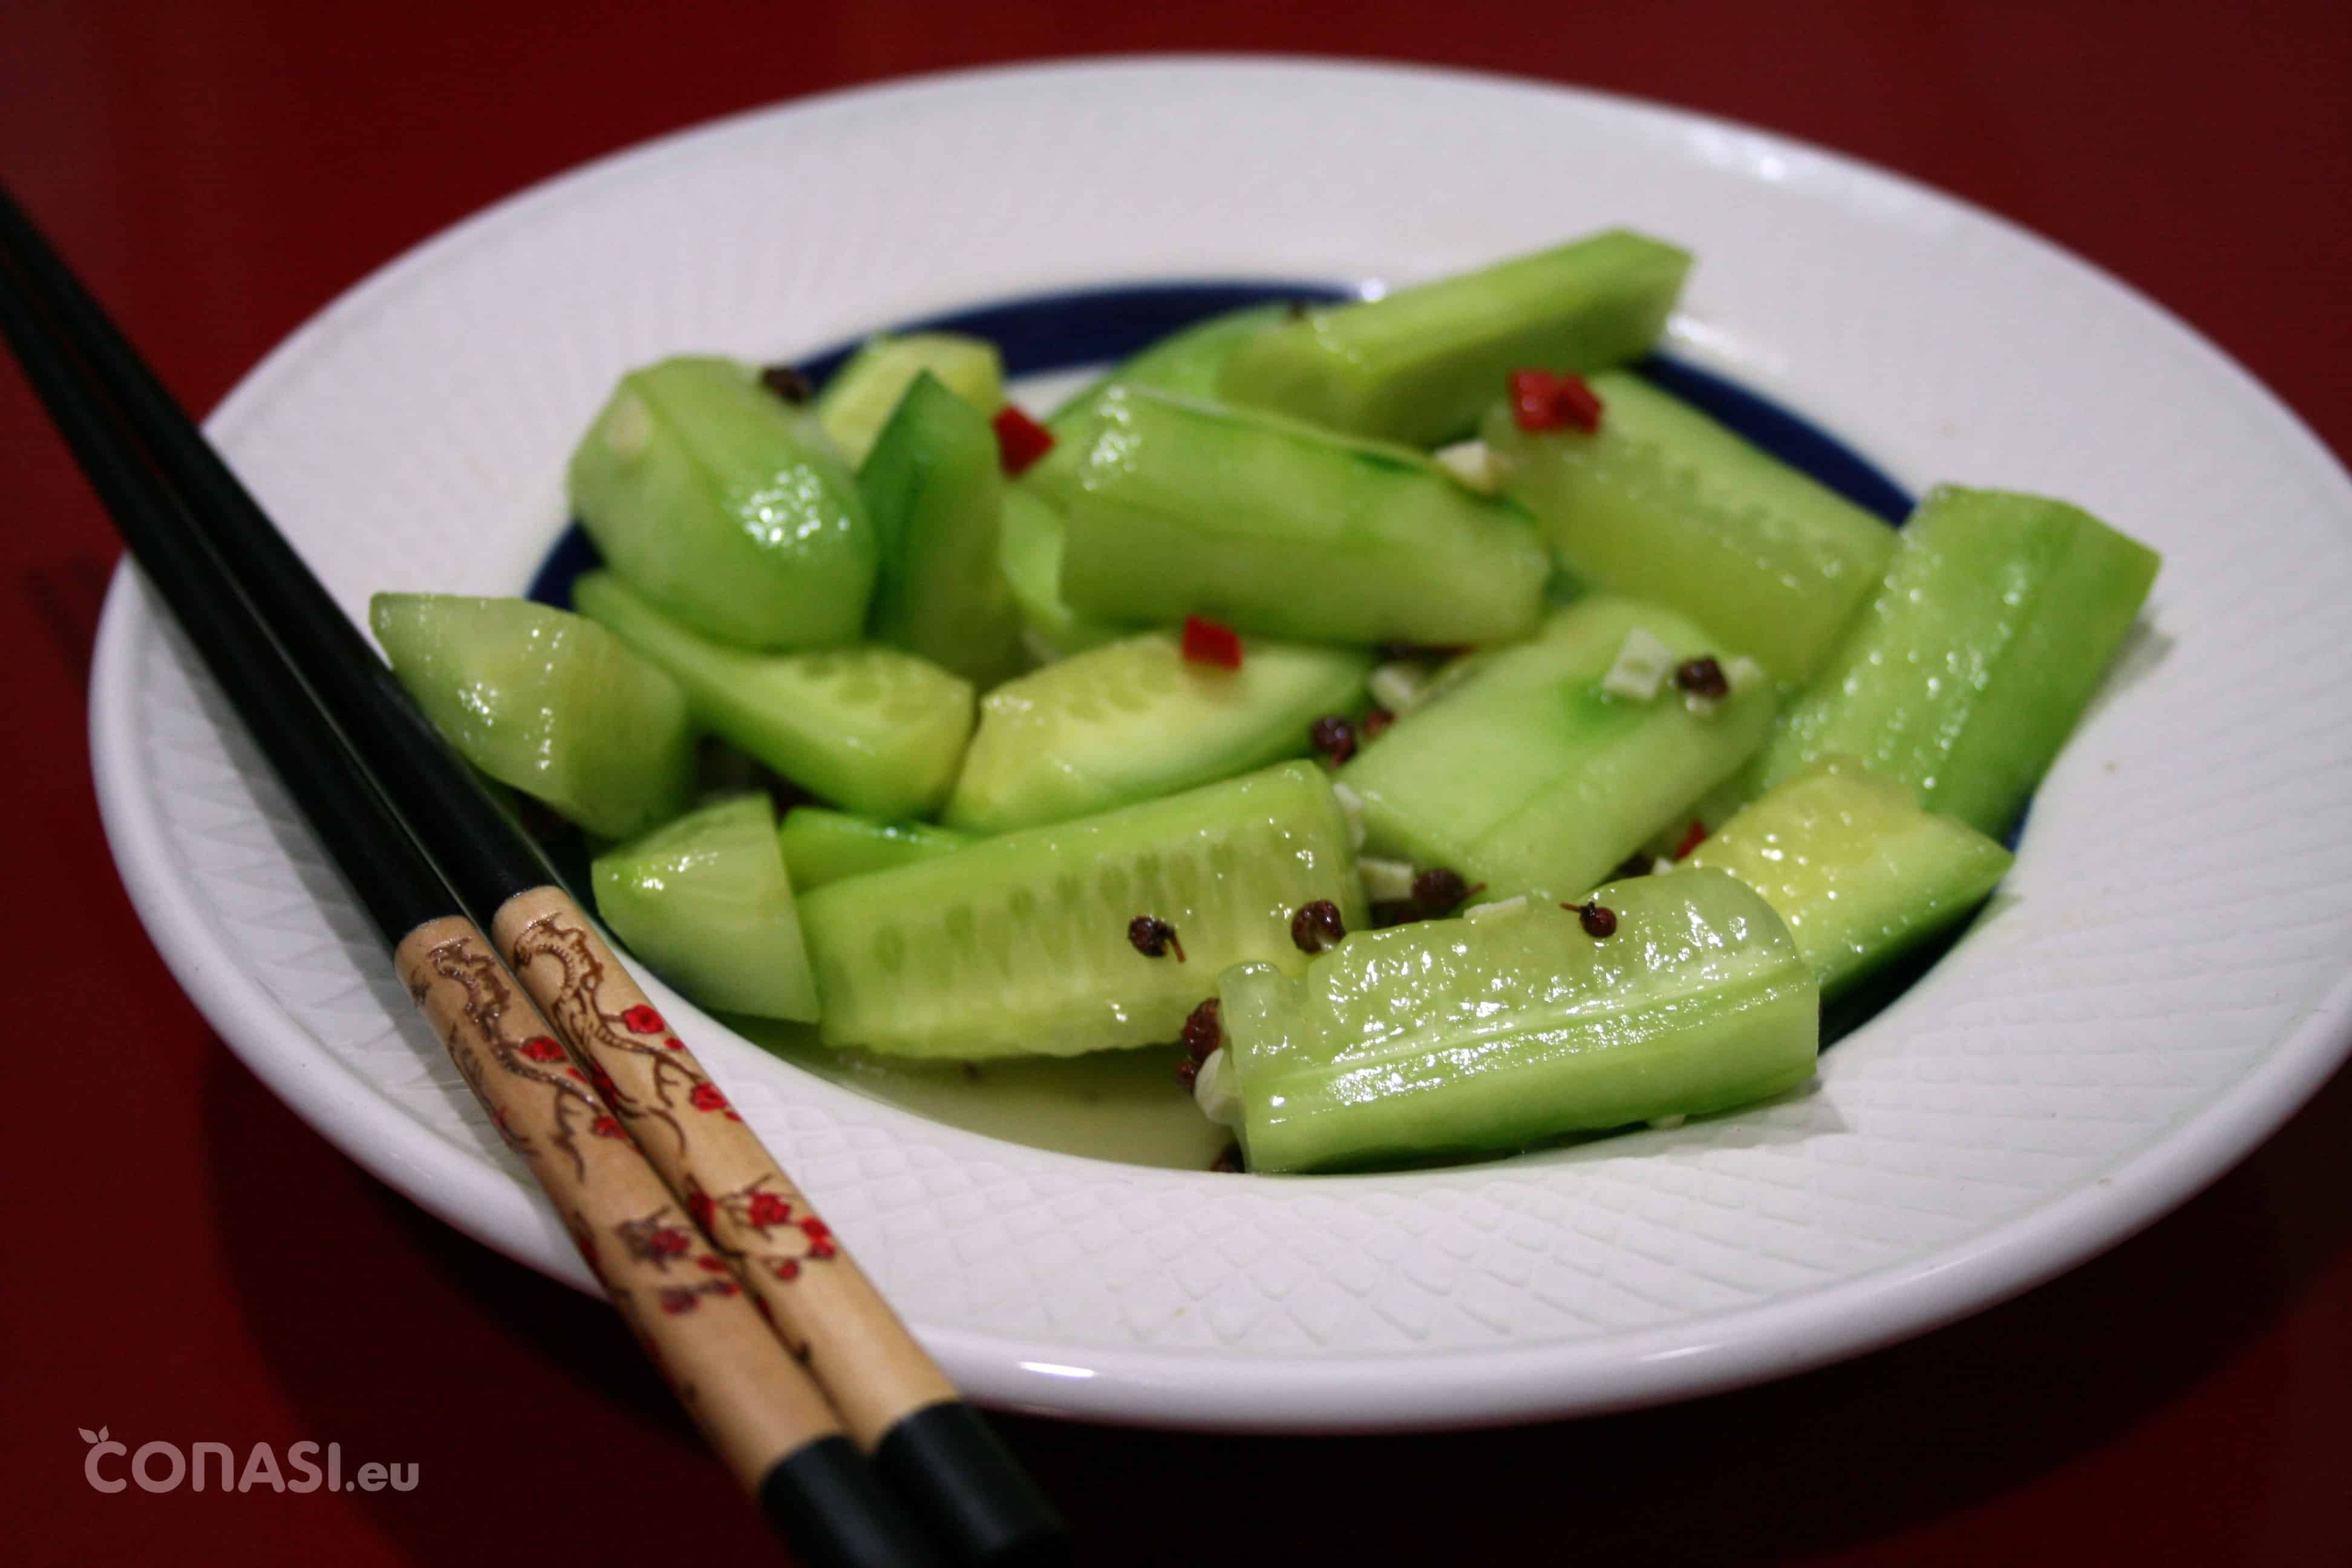 Ensalada de pepino al estilo Sichuan - Ensalada fresca y picante